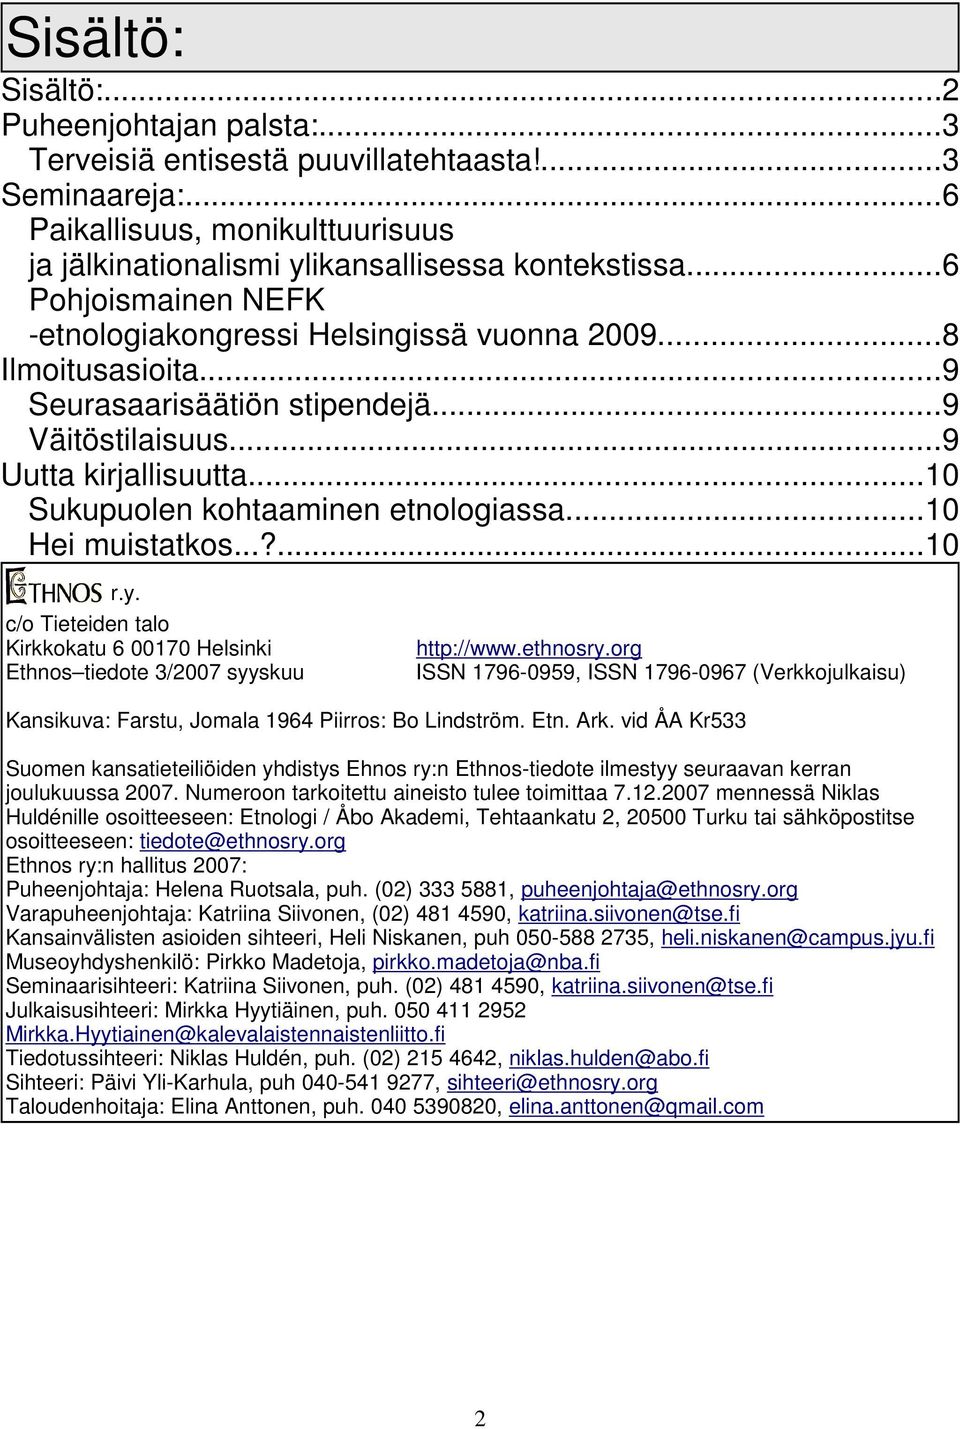 ..10 Sukupuolen kohtaaminen etnologiassa...10 Hei muistatkos...?...10 r.y. c/o Tieteiden talo Kirkkokatu 6 00170 Helsinki Ethnos tiedote 3/2007 syyskuu http://www.ethnosry.